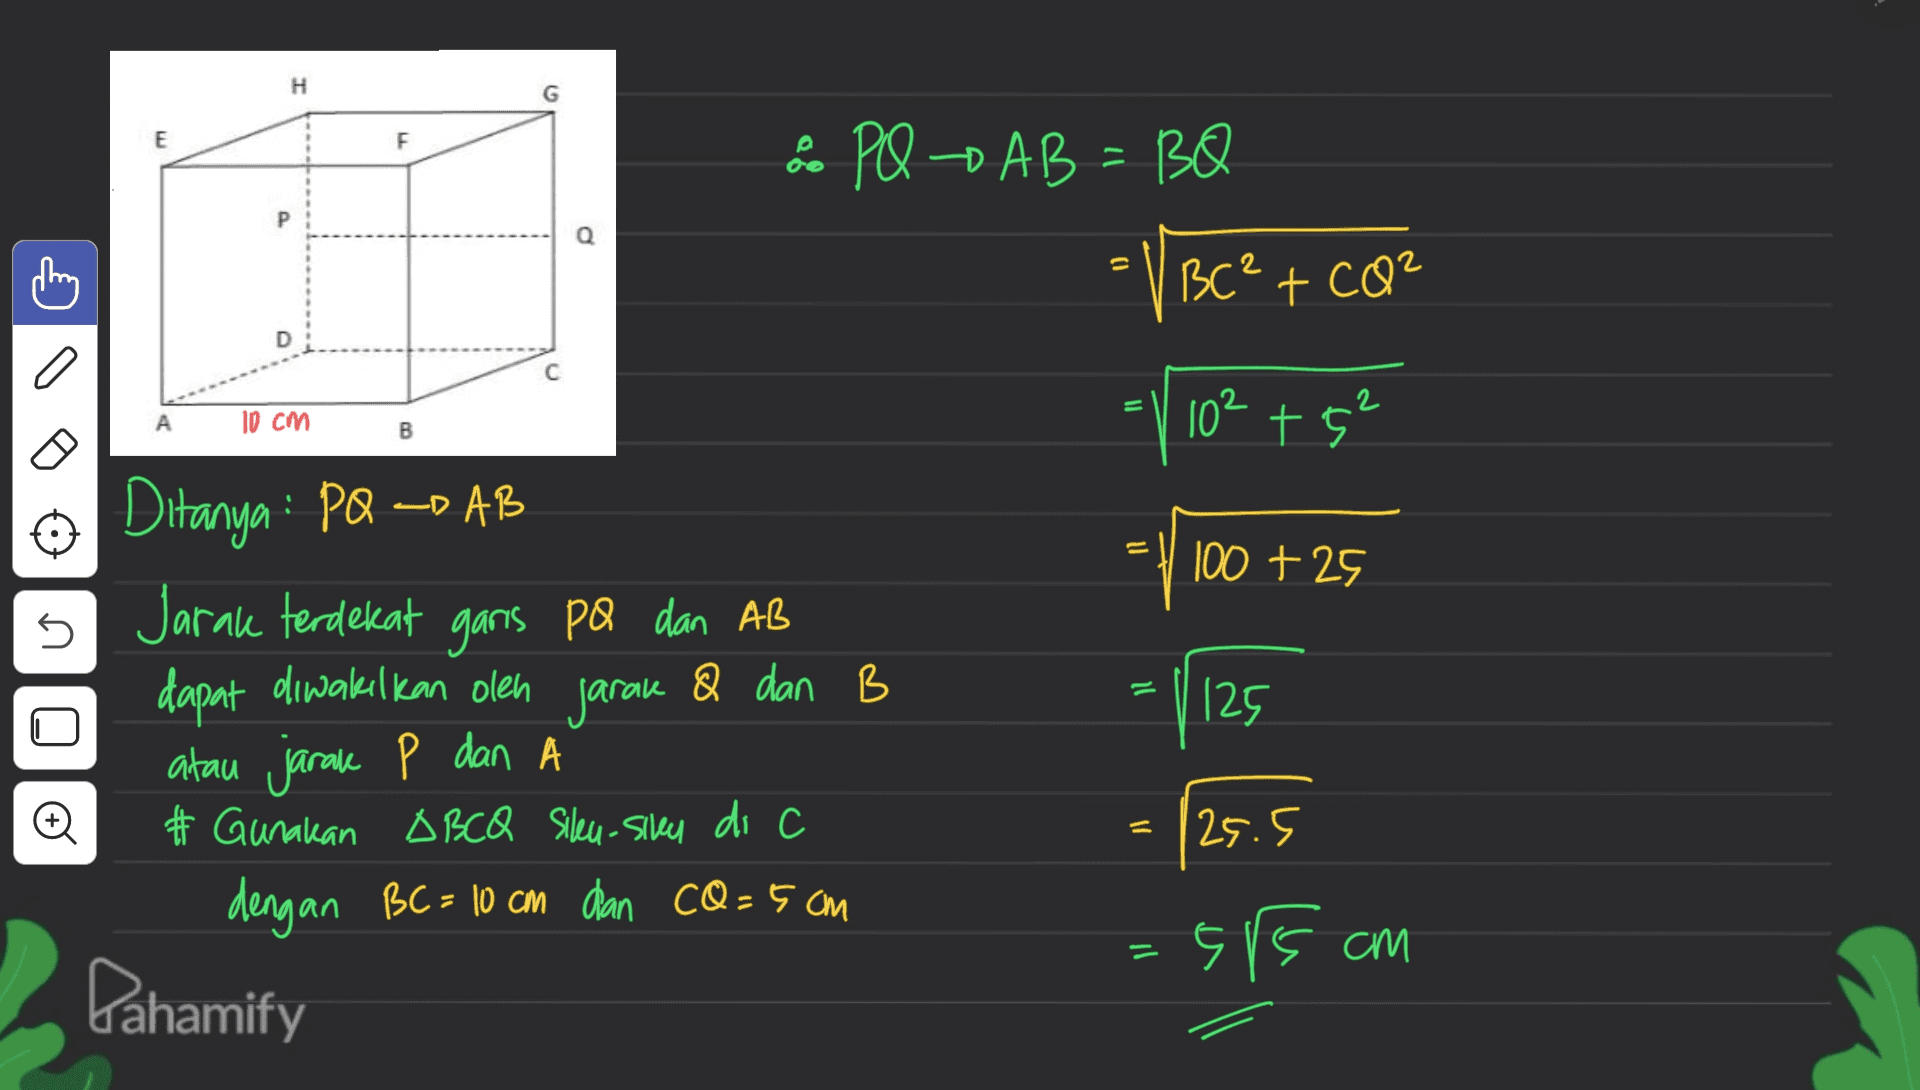 H E F & PQ AB=BQ VBC² + CO² Q 0 D o С 10 cm 10²+5² B ے 11 100 + 25 s Ditanya : PQ =D AB Jarak terdekat garis pa dan AB dapat diwakilkan olen jarak & dan B atau jarake P dan A # Gunakan OBCQ Sileu-sily di c dengan BC= 10 cm dan cQ=5cm 125 o = 25.5 - 5/5 am Dahamify 